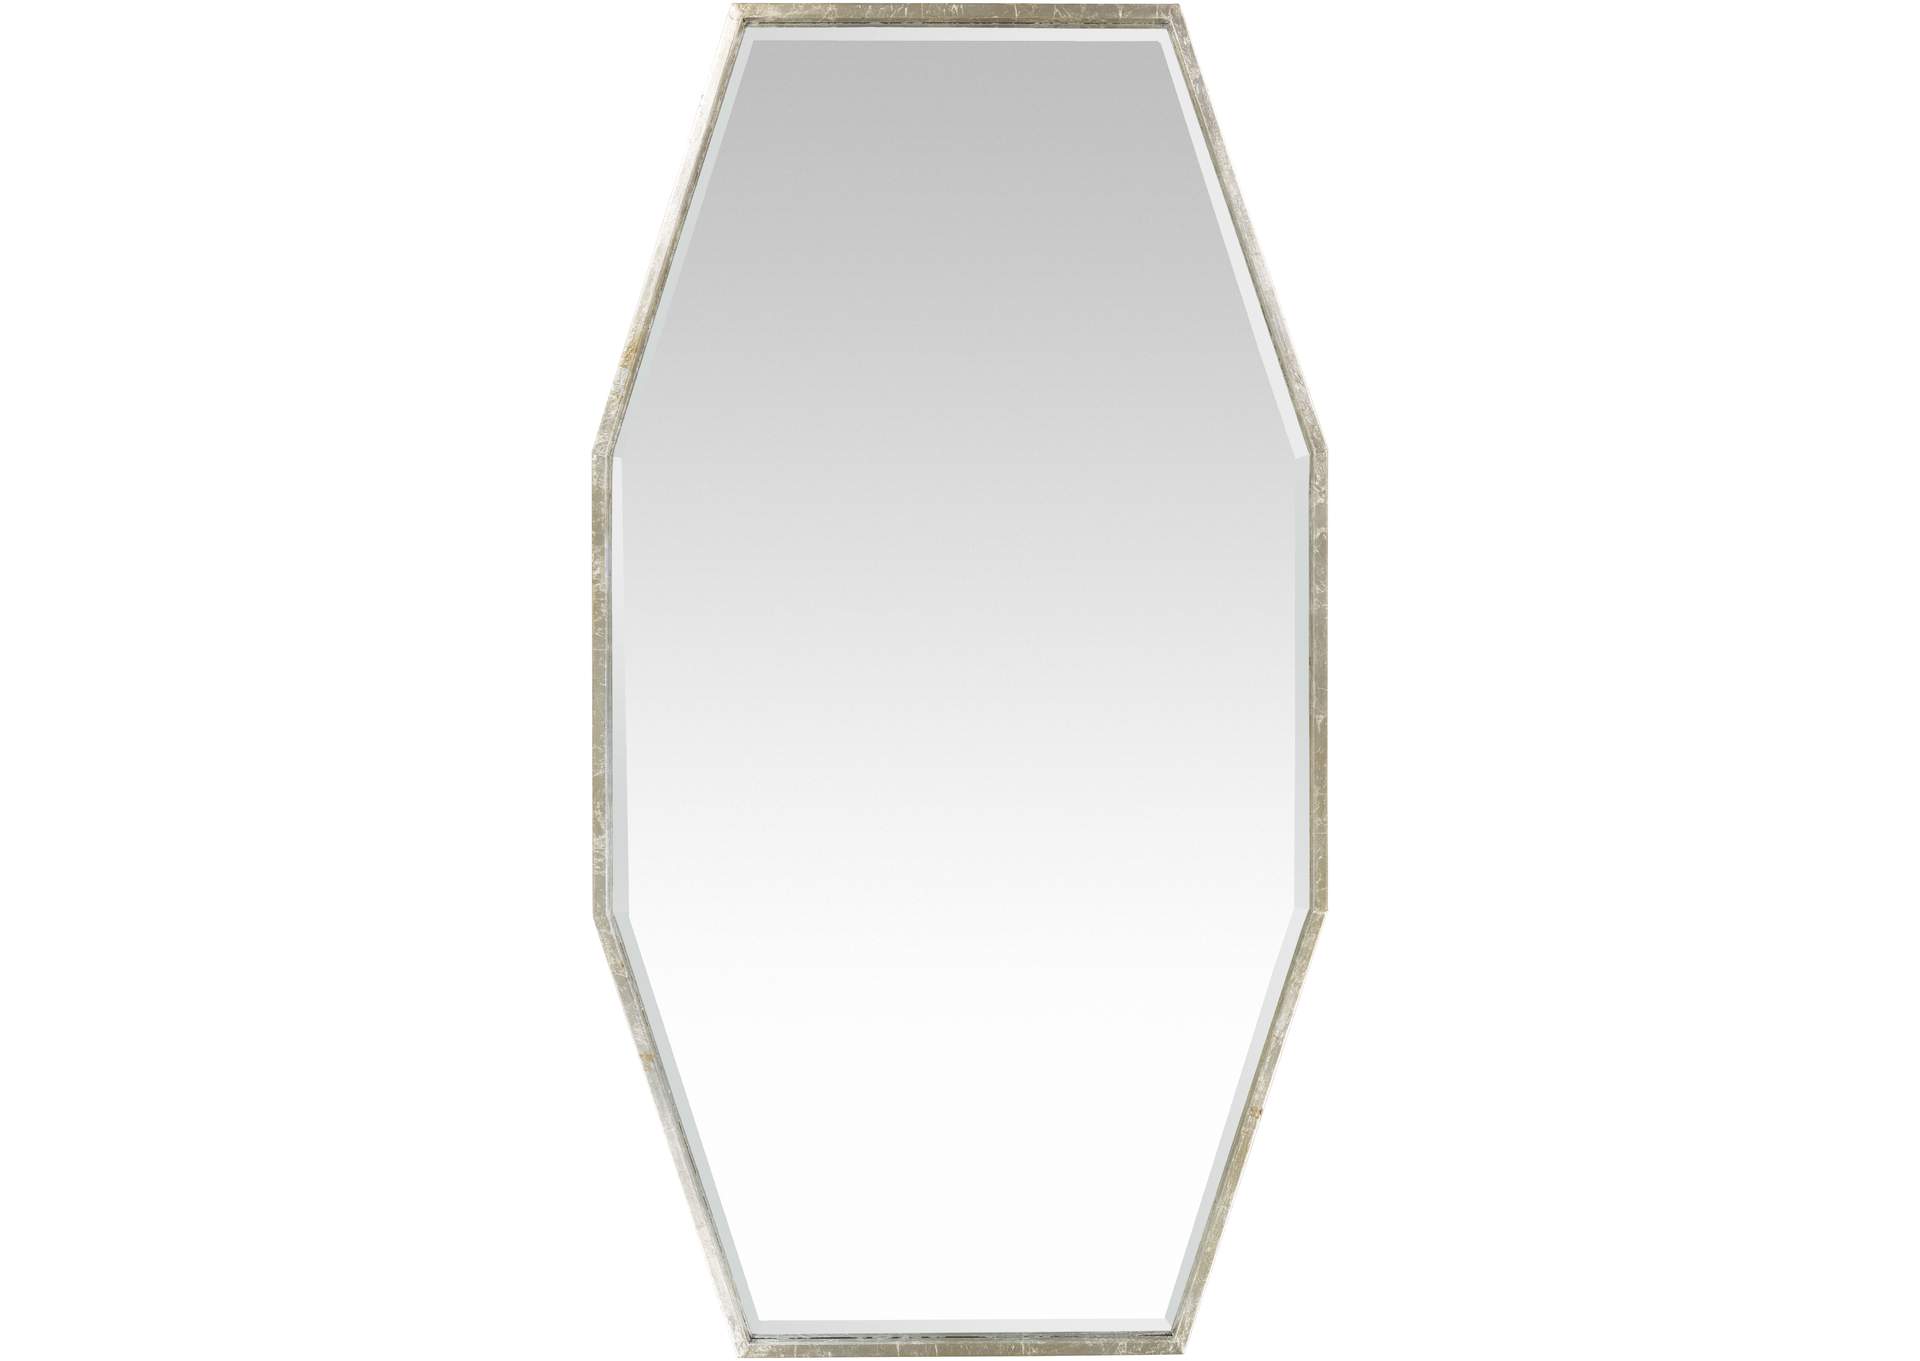 Adams Silver Mirror,Surya